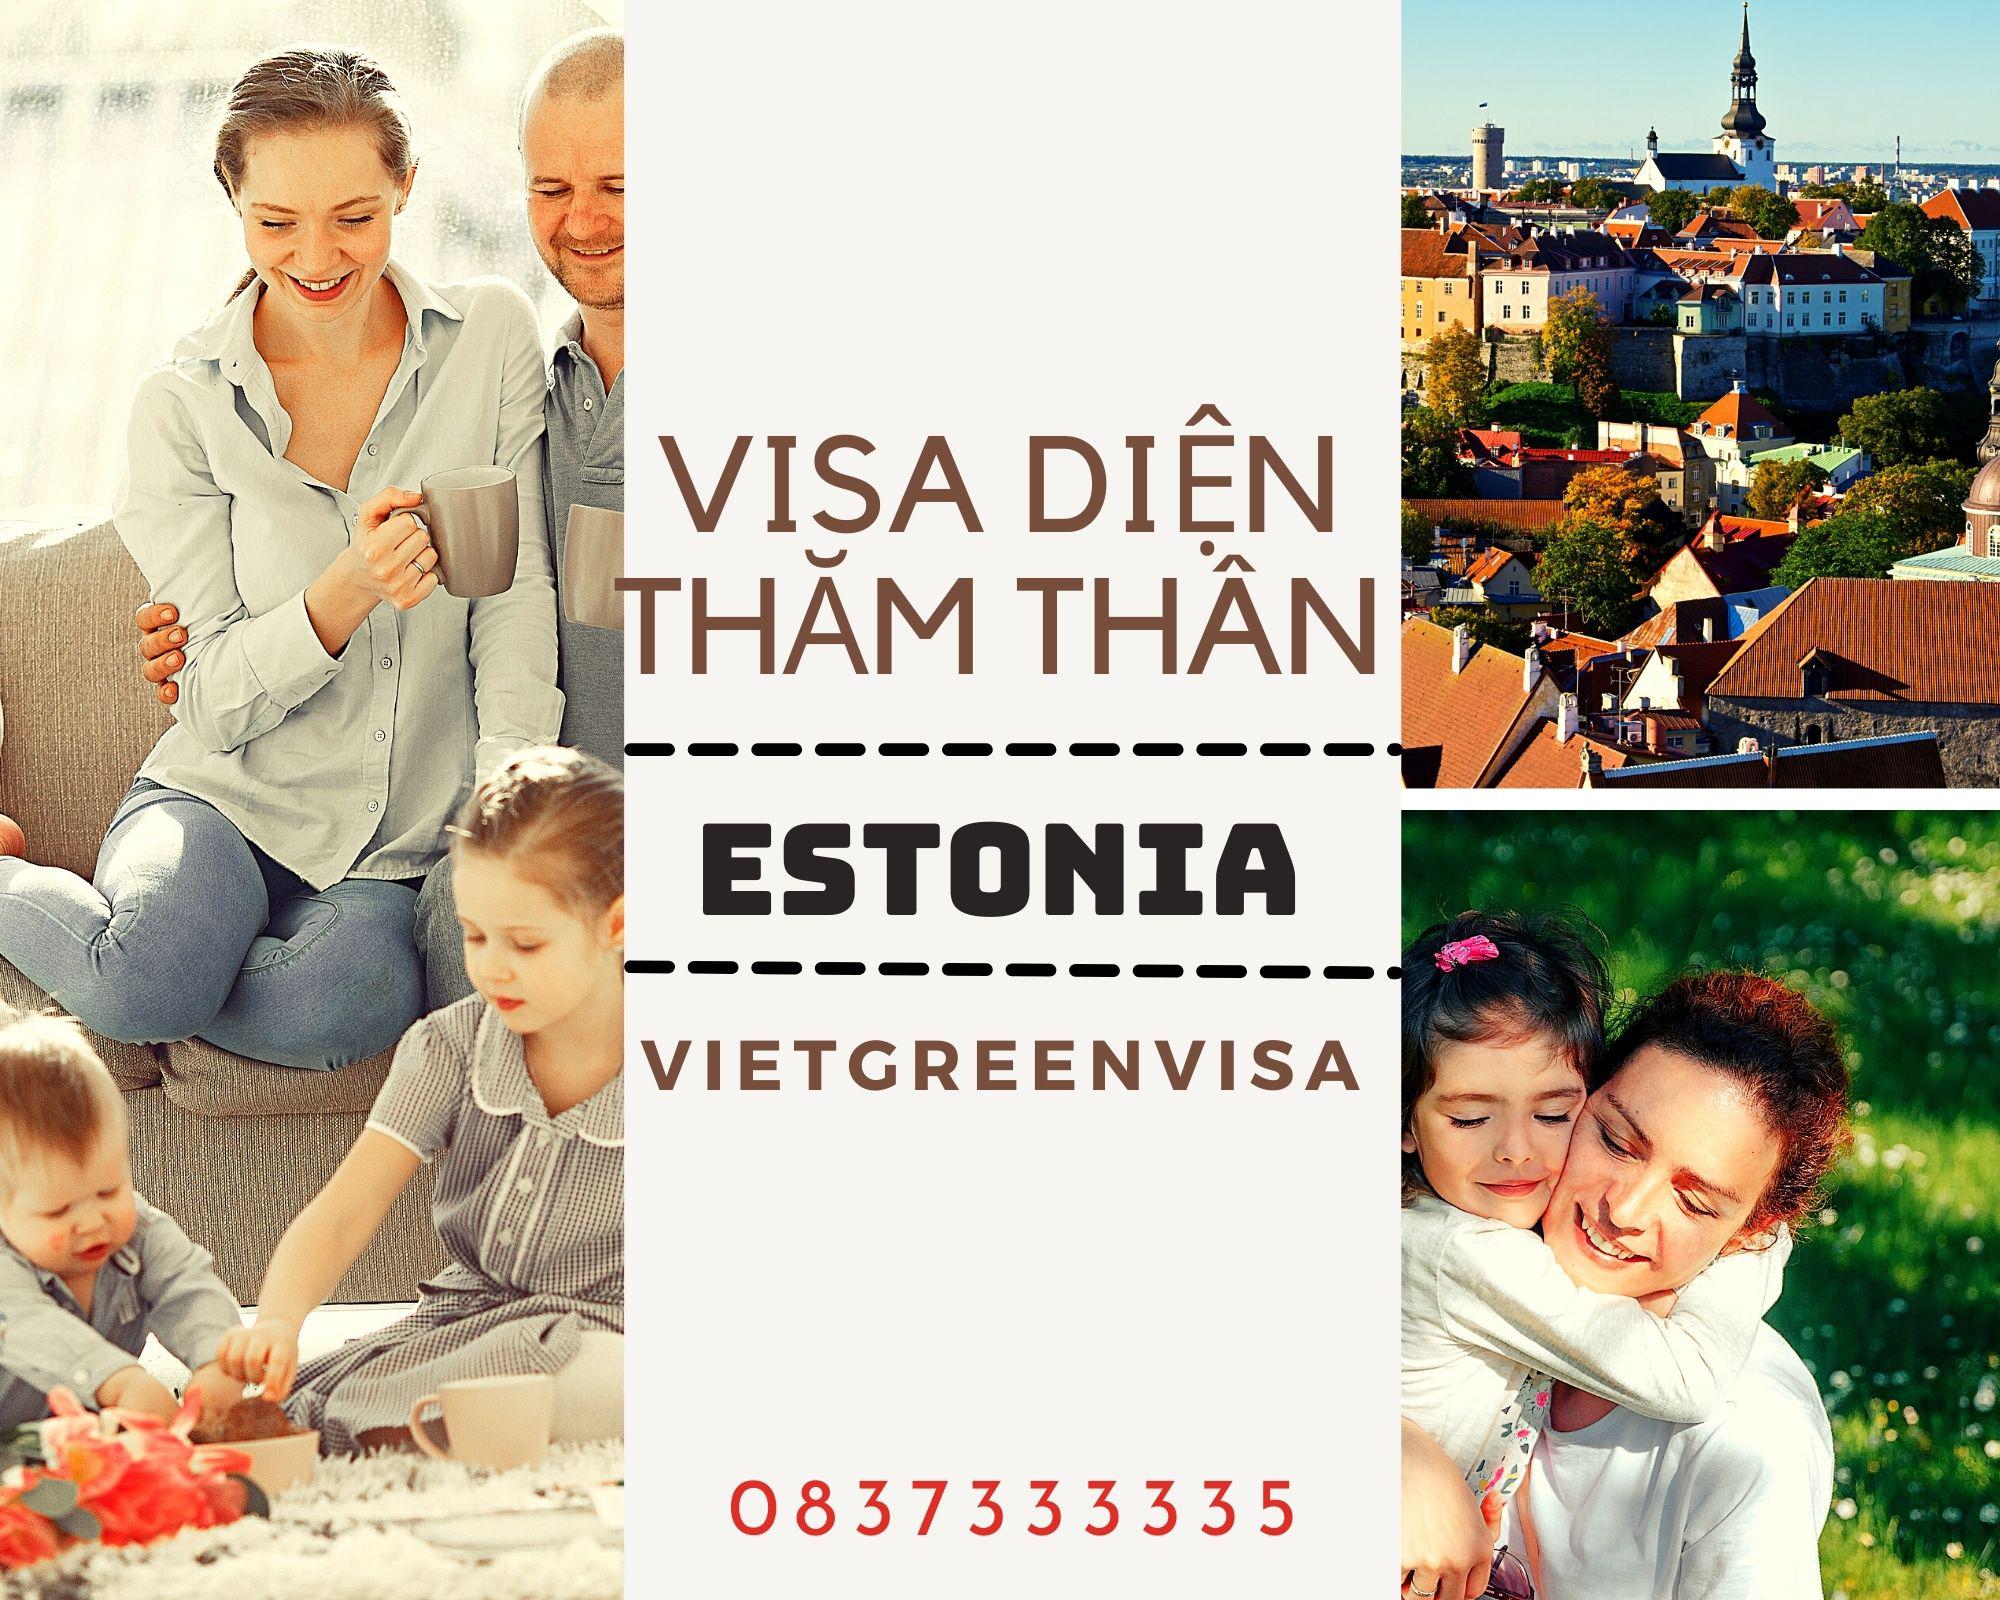 Gói dịch vụ tư vấn visa Estonia thăm thân trọn gói